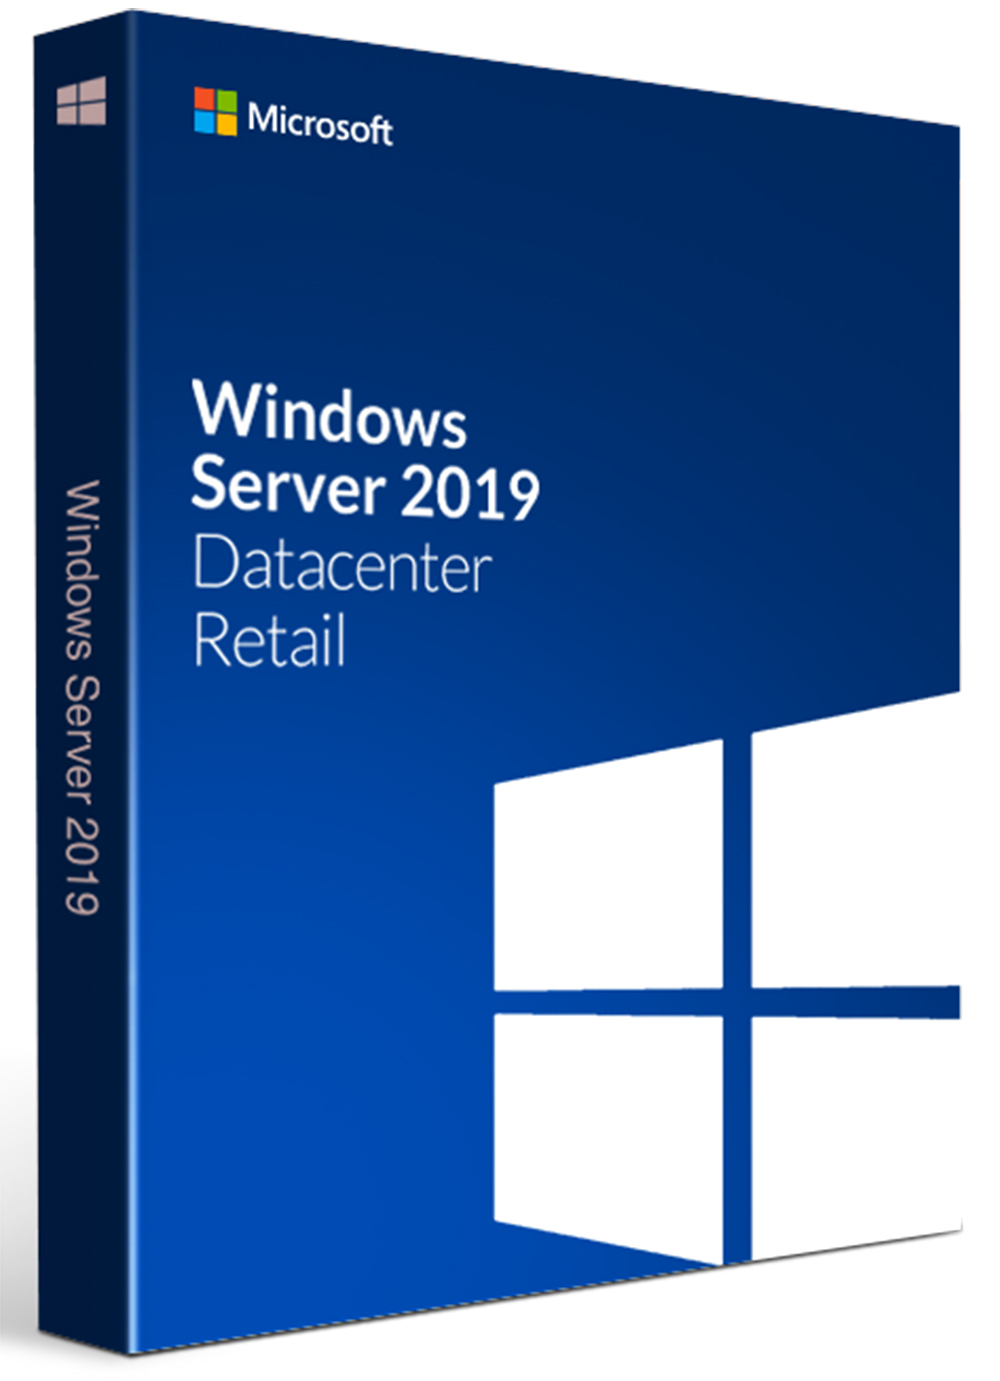 Windows Server 2019 Datacenter CD Key (Digital Download) - 